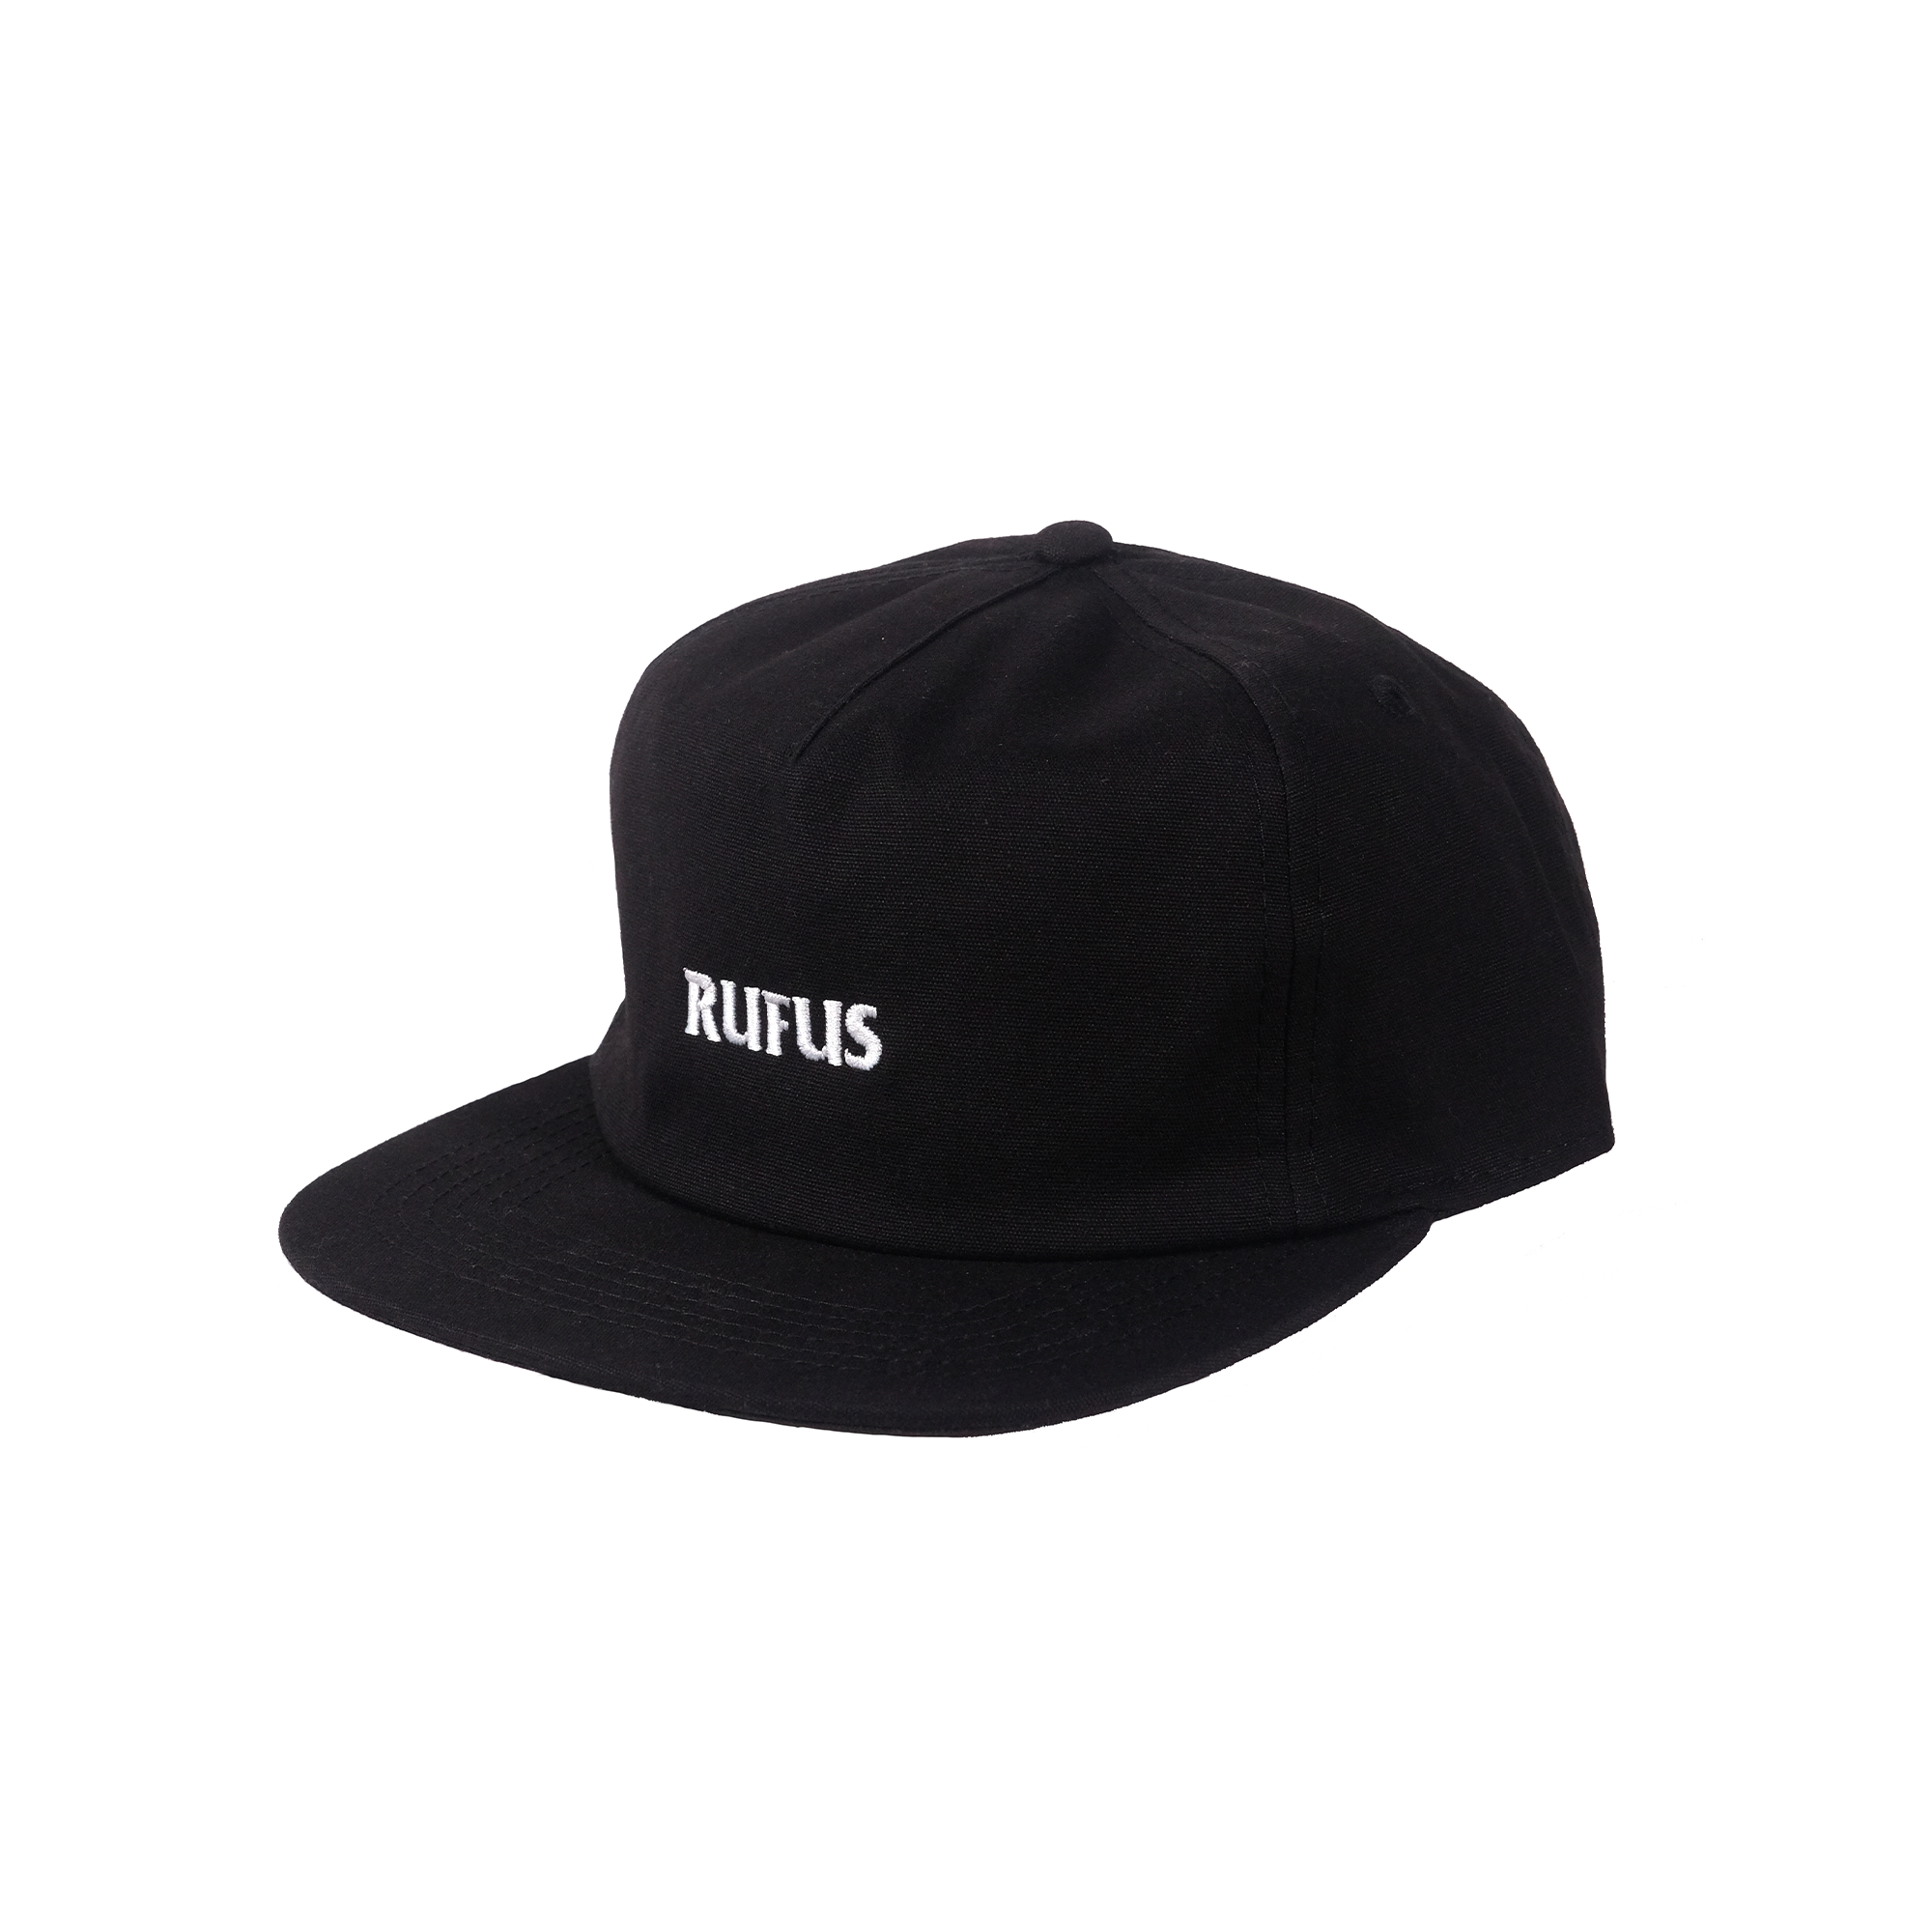 RUFUS - SCRIPT CAP BLACK